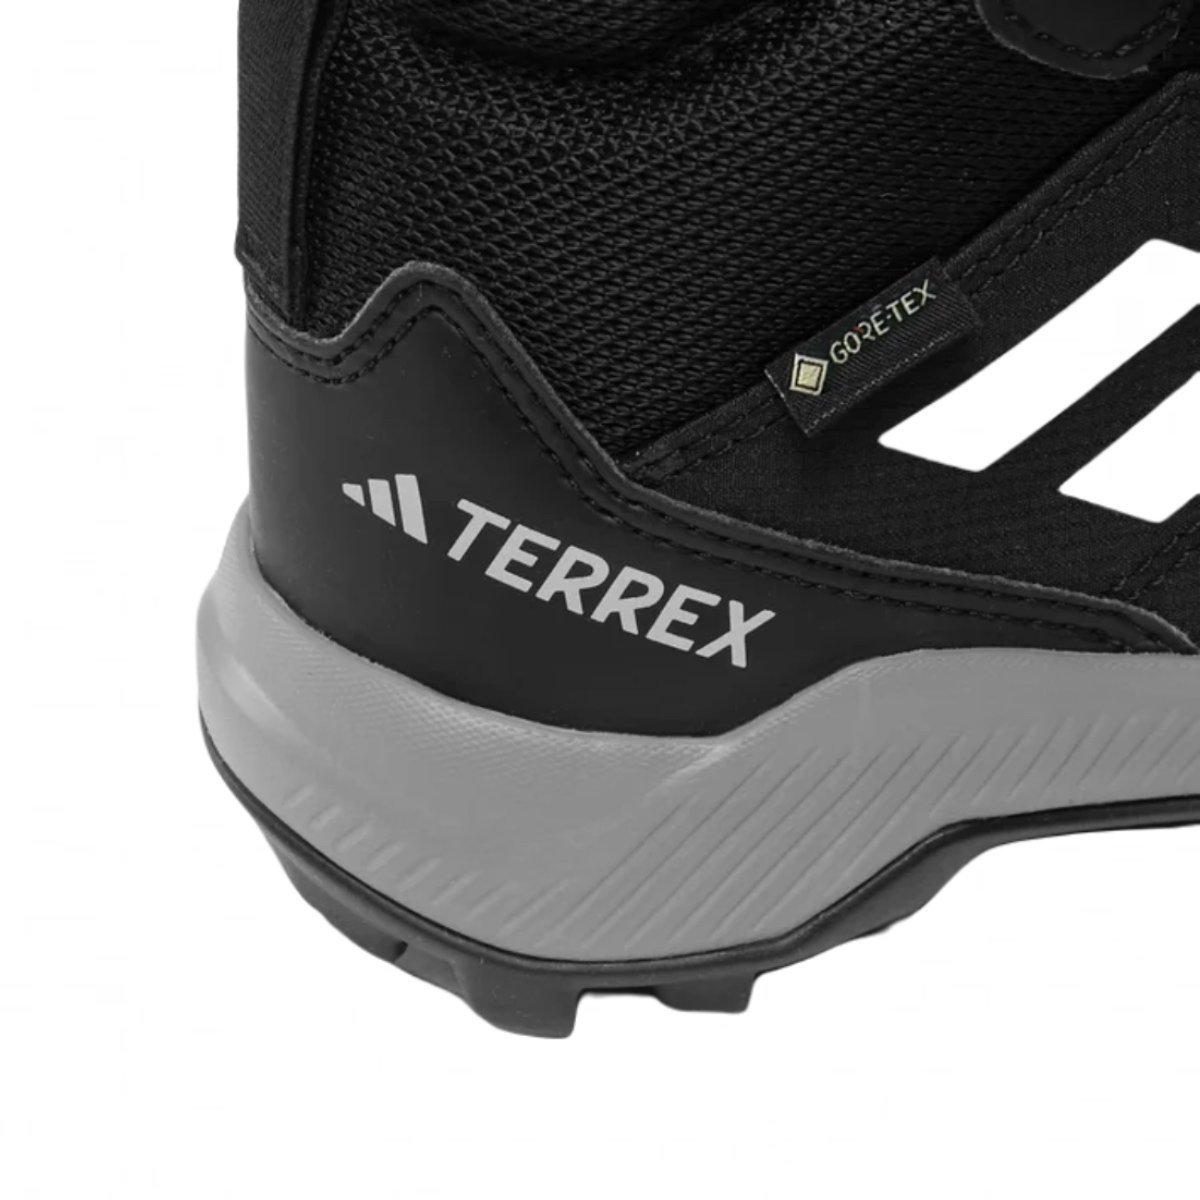 Obuv Adidas Terrex Mid GTX Jr - čierna/sivá